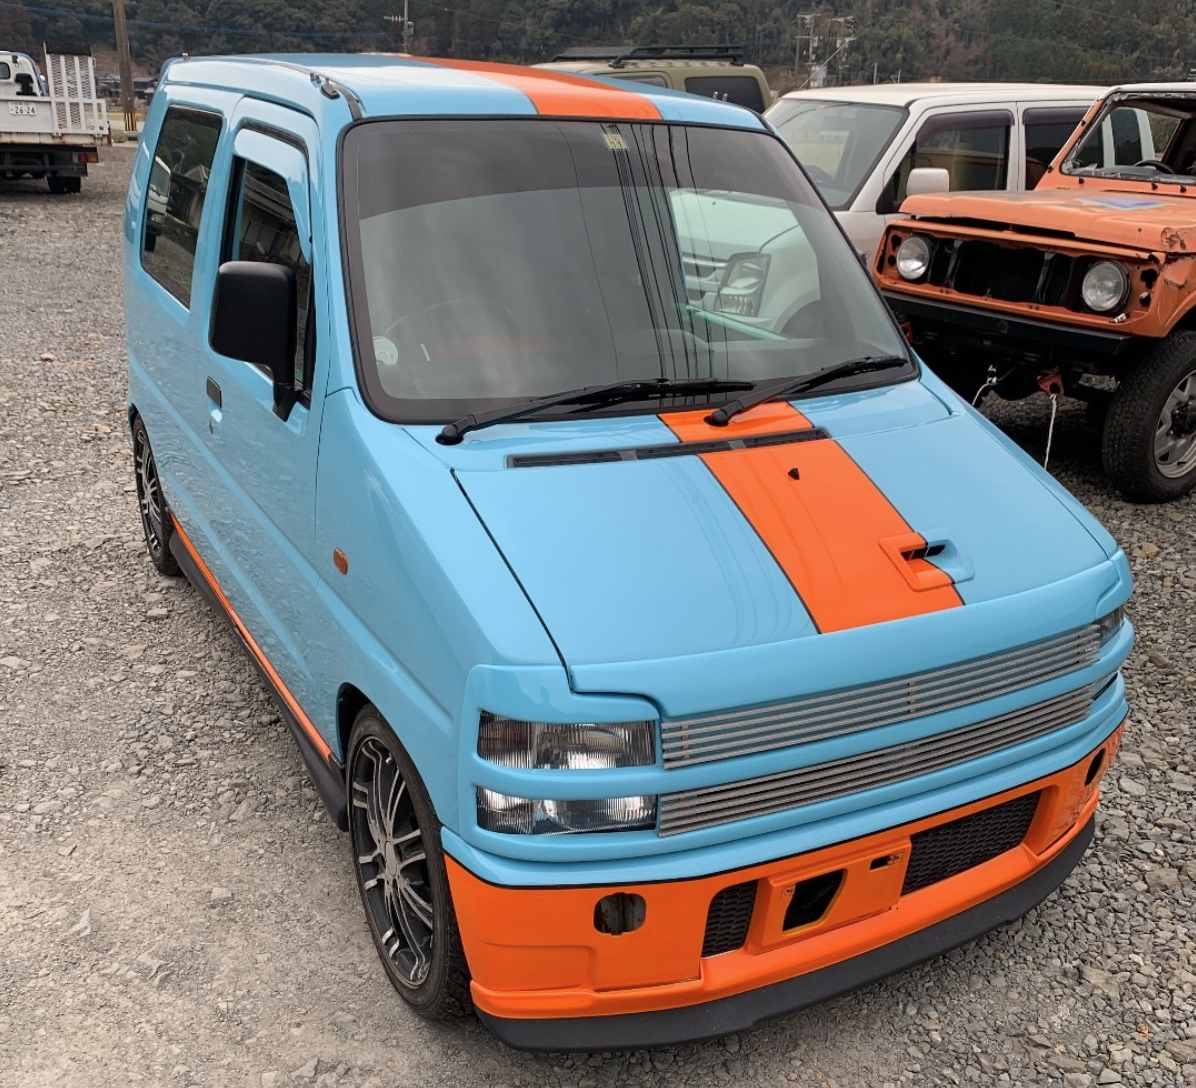 1995 Suzuki WagonR - JUST ARRIVED